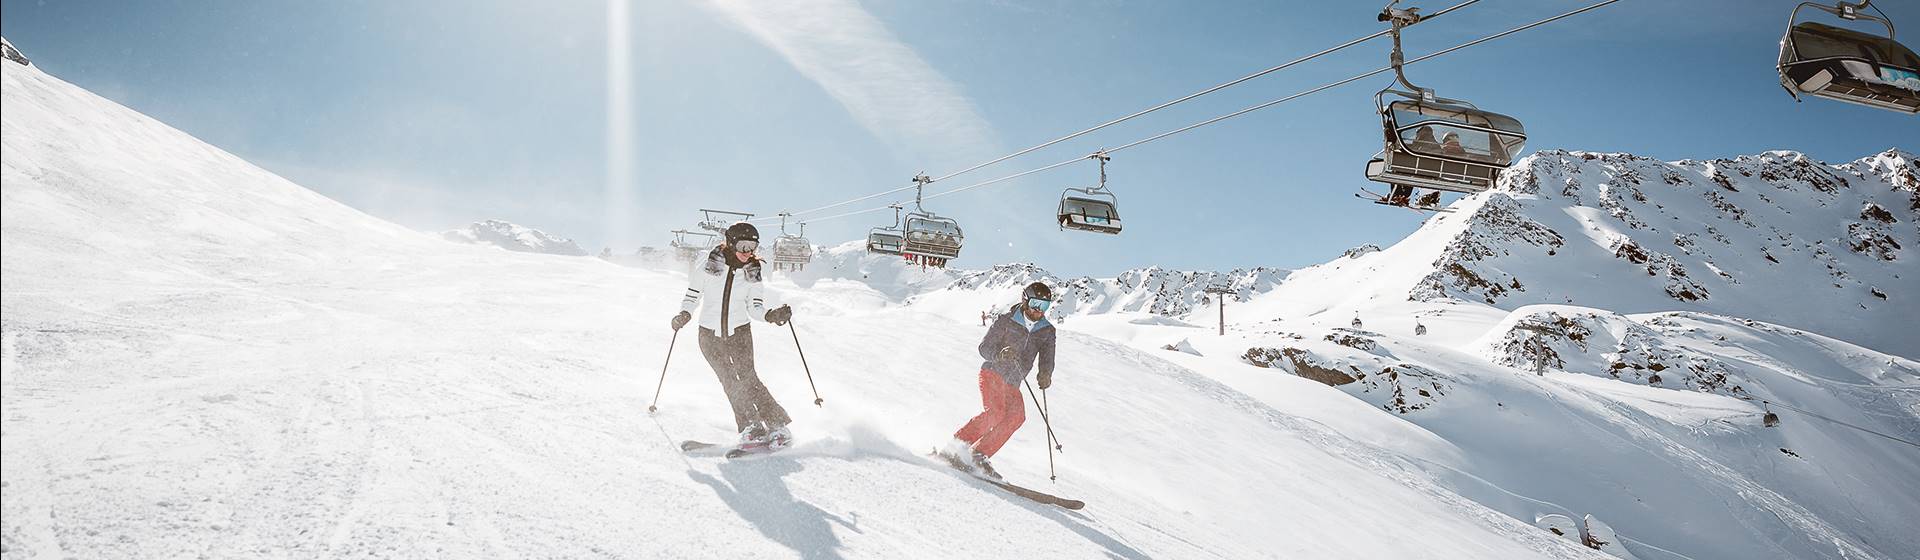 Zwei Skifahrer auf Skipiste unter Sessellift